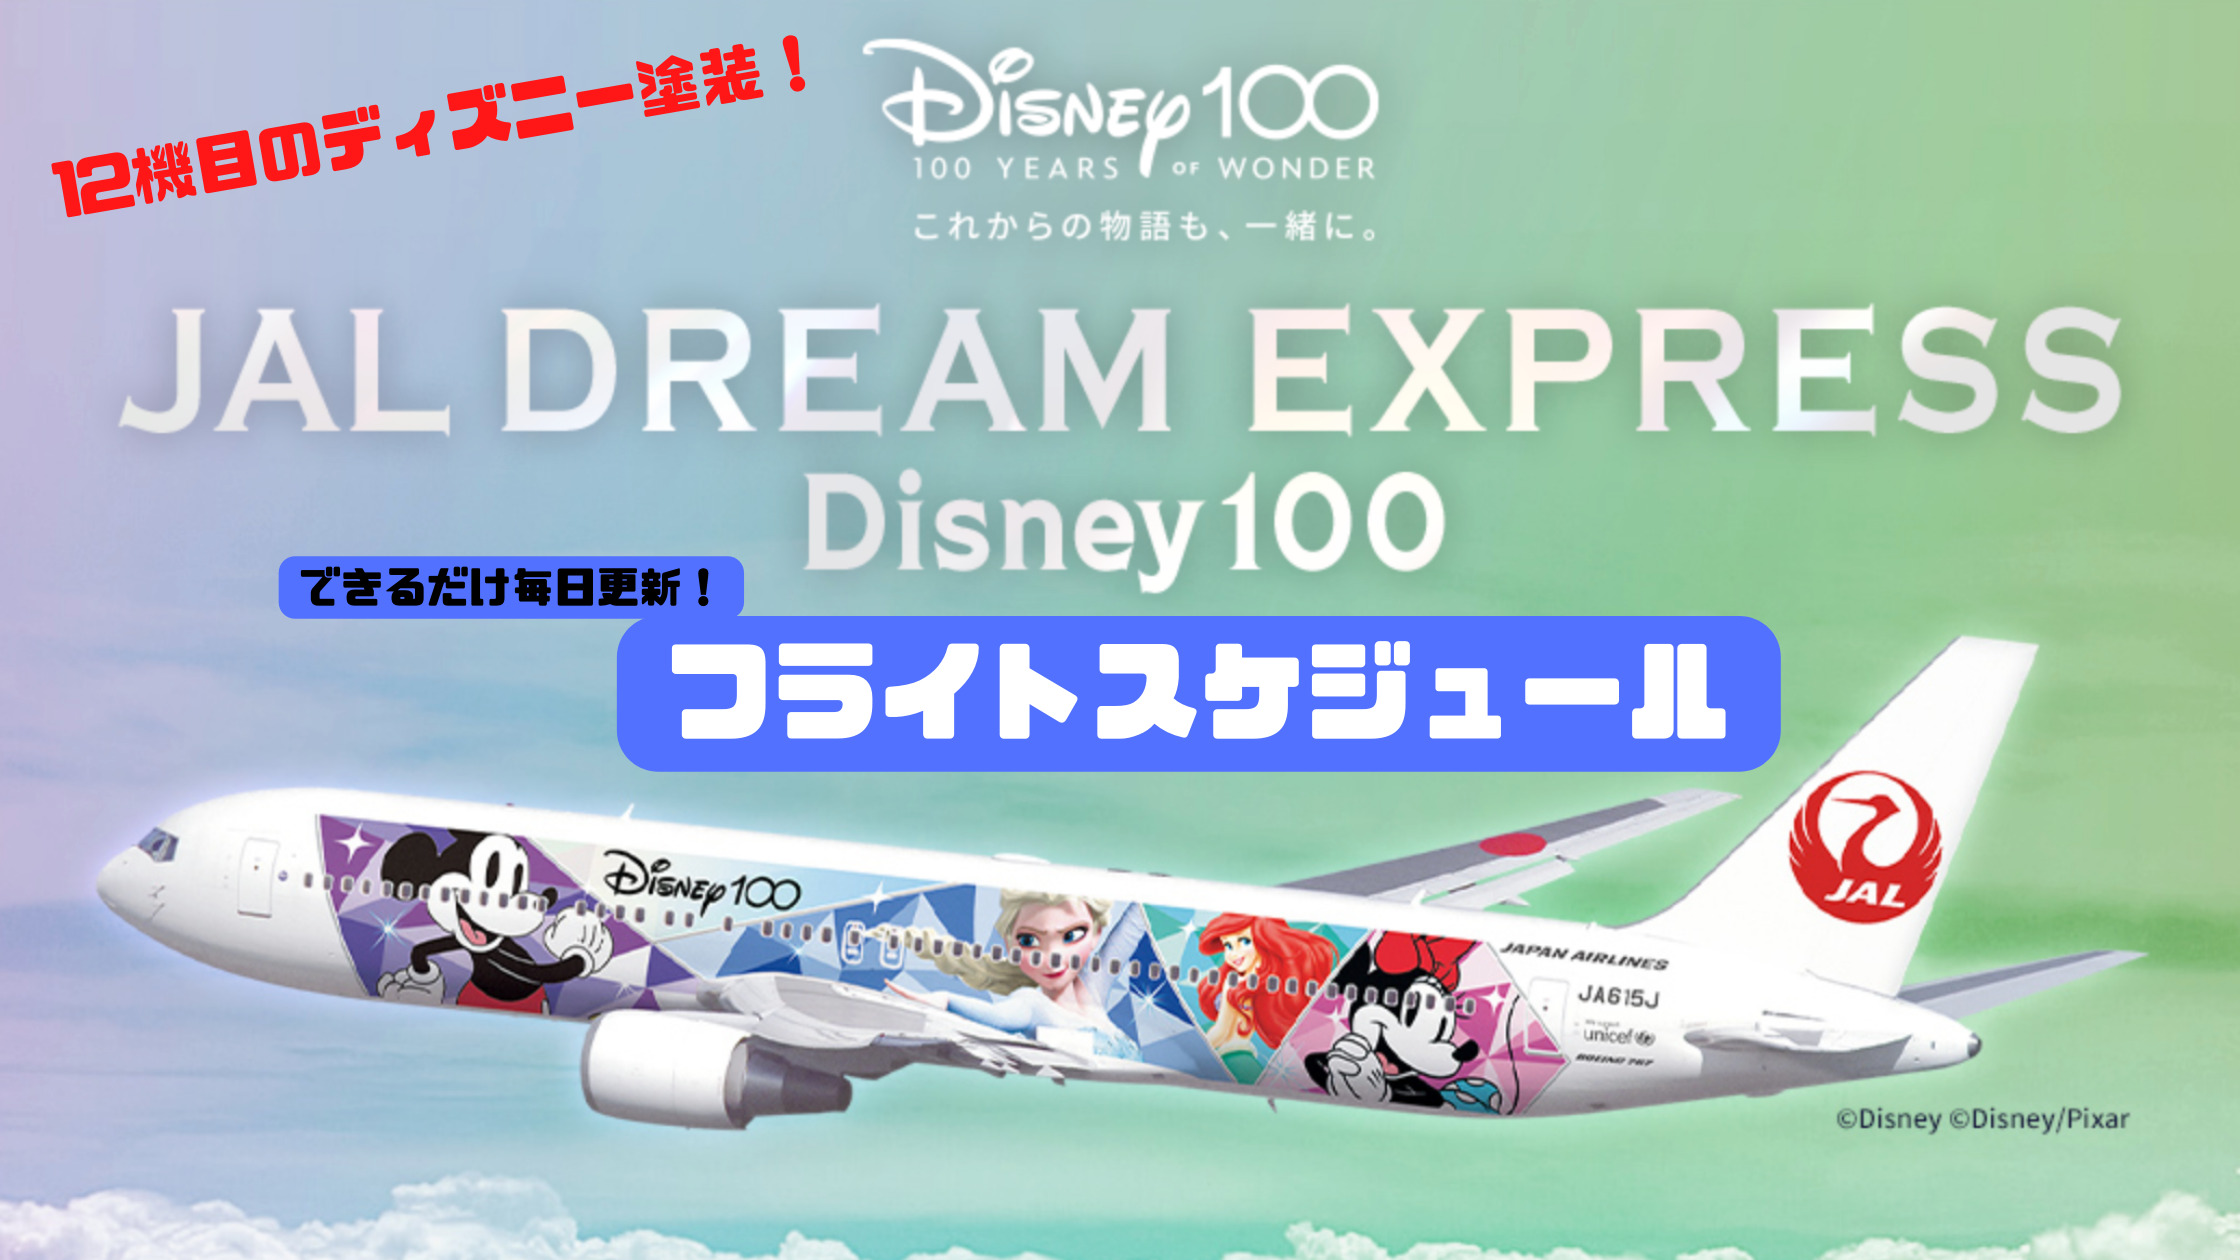 フライトスケジュール毎日更新】ディズニーデザイン特別塗装「JAL DREAM EXPRESS Disney100」運航予定時刻表 シテイリョウコウ